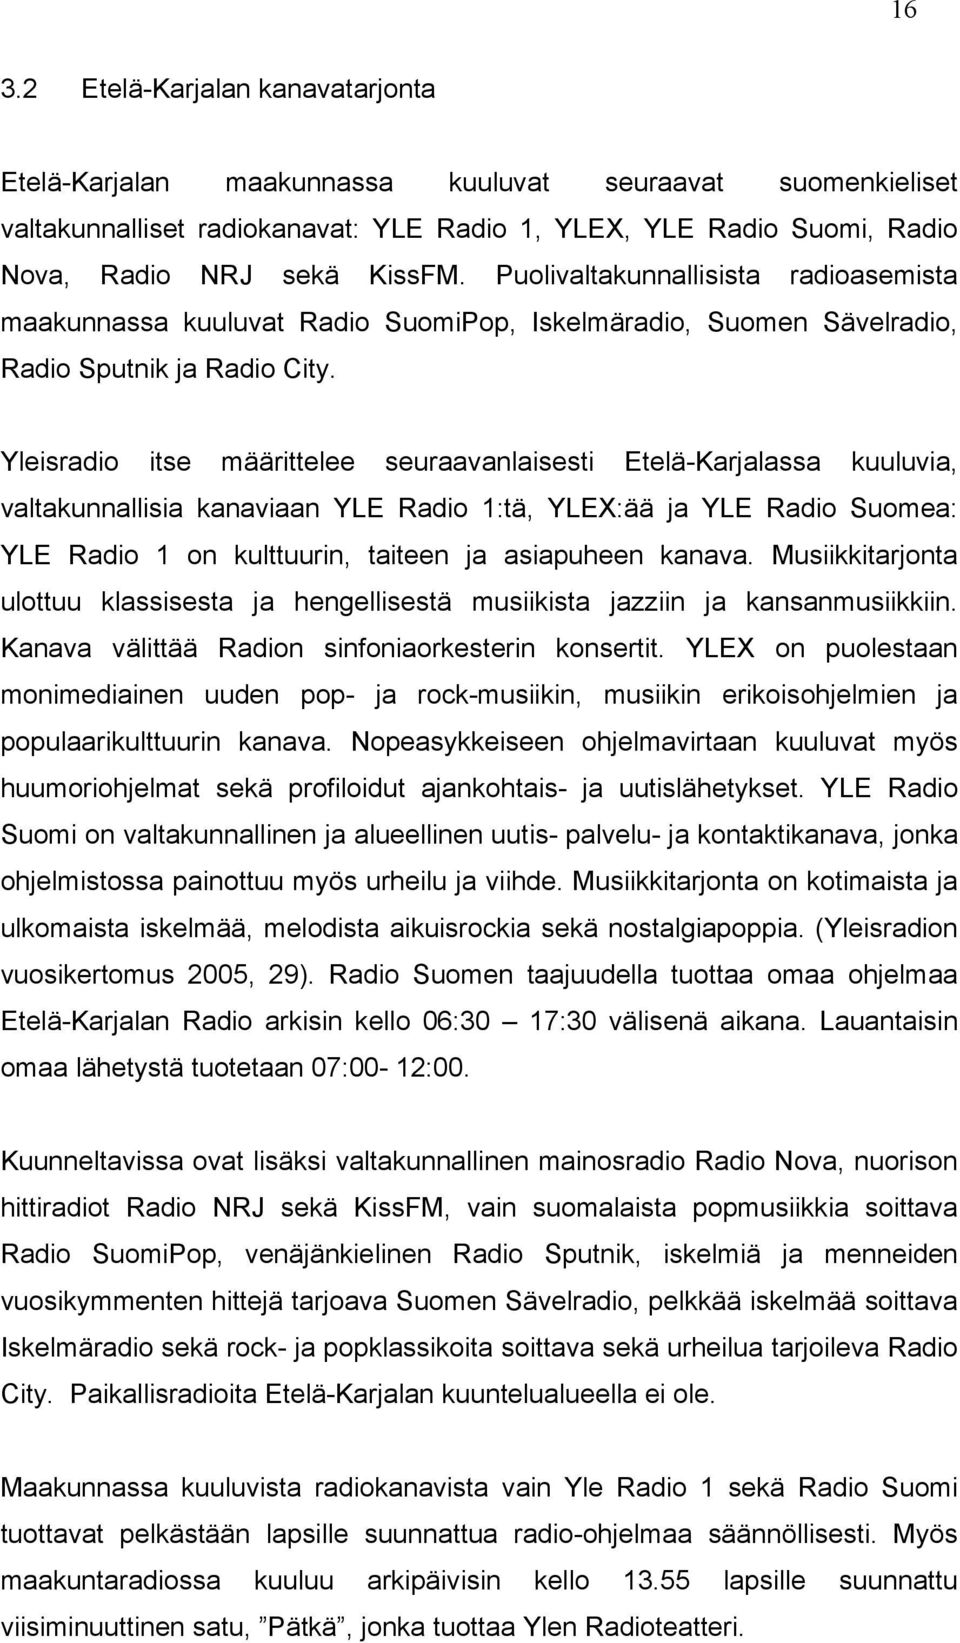 Yleisradio itse määrittelee seuraavanlaisesti Etelä-Karjalassa kuuluvia, valtakunnallisia kanaviaan YLE Radio 1:tä, YLEX:ää ja YLE Radio Suomea: YLE Radio 1 on kulttuurin, taiteen ja asiapuheen